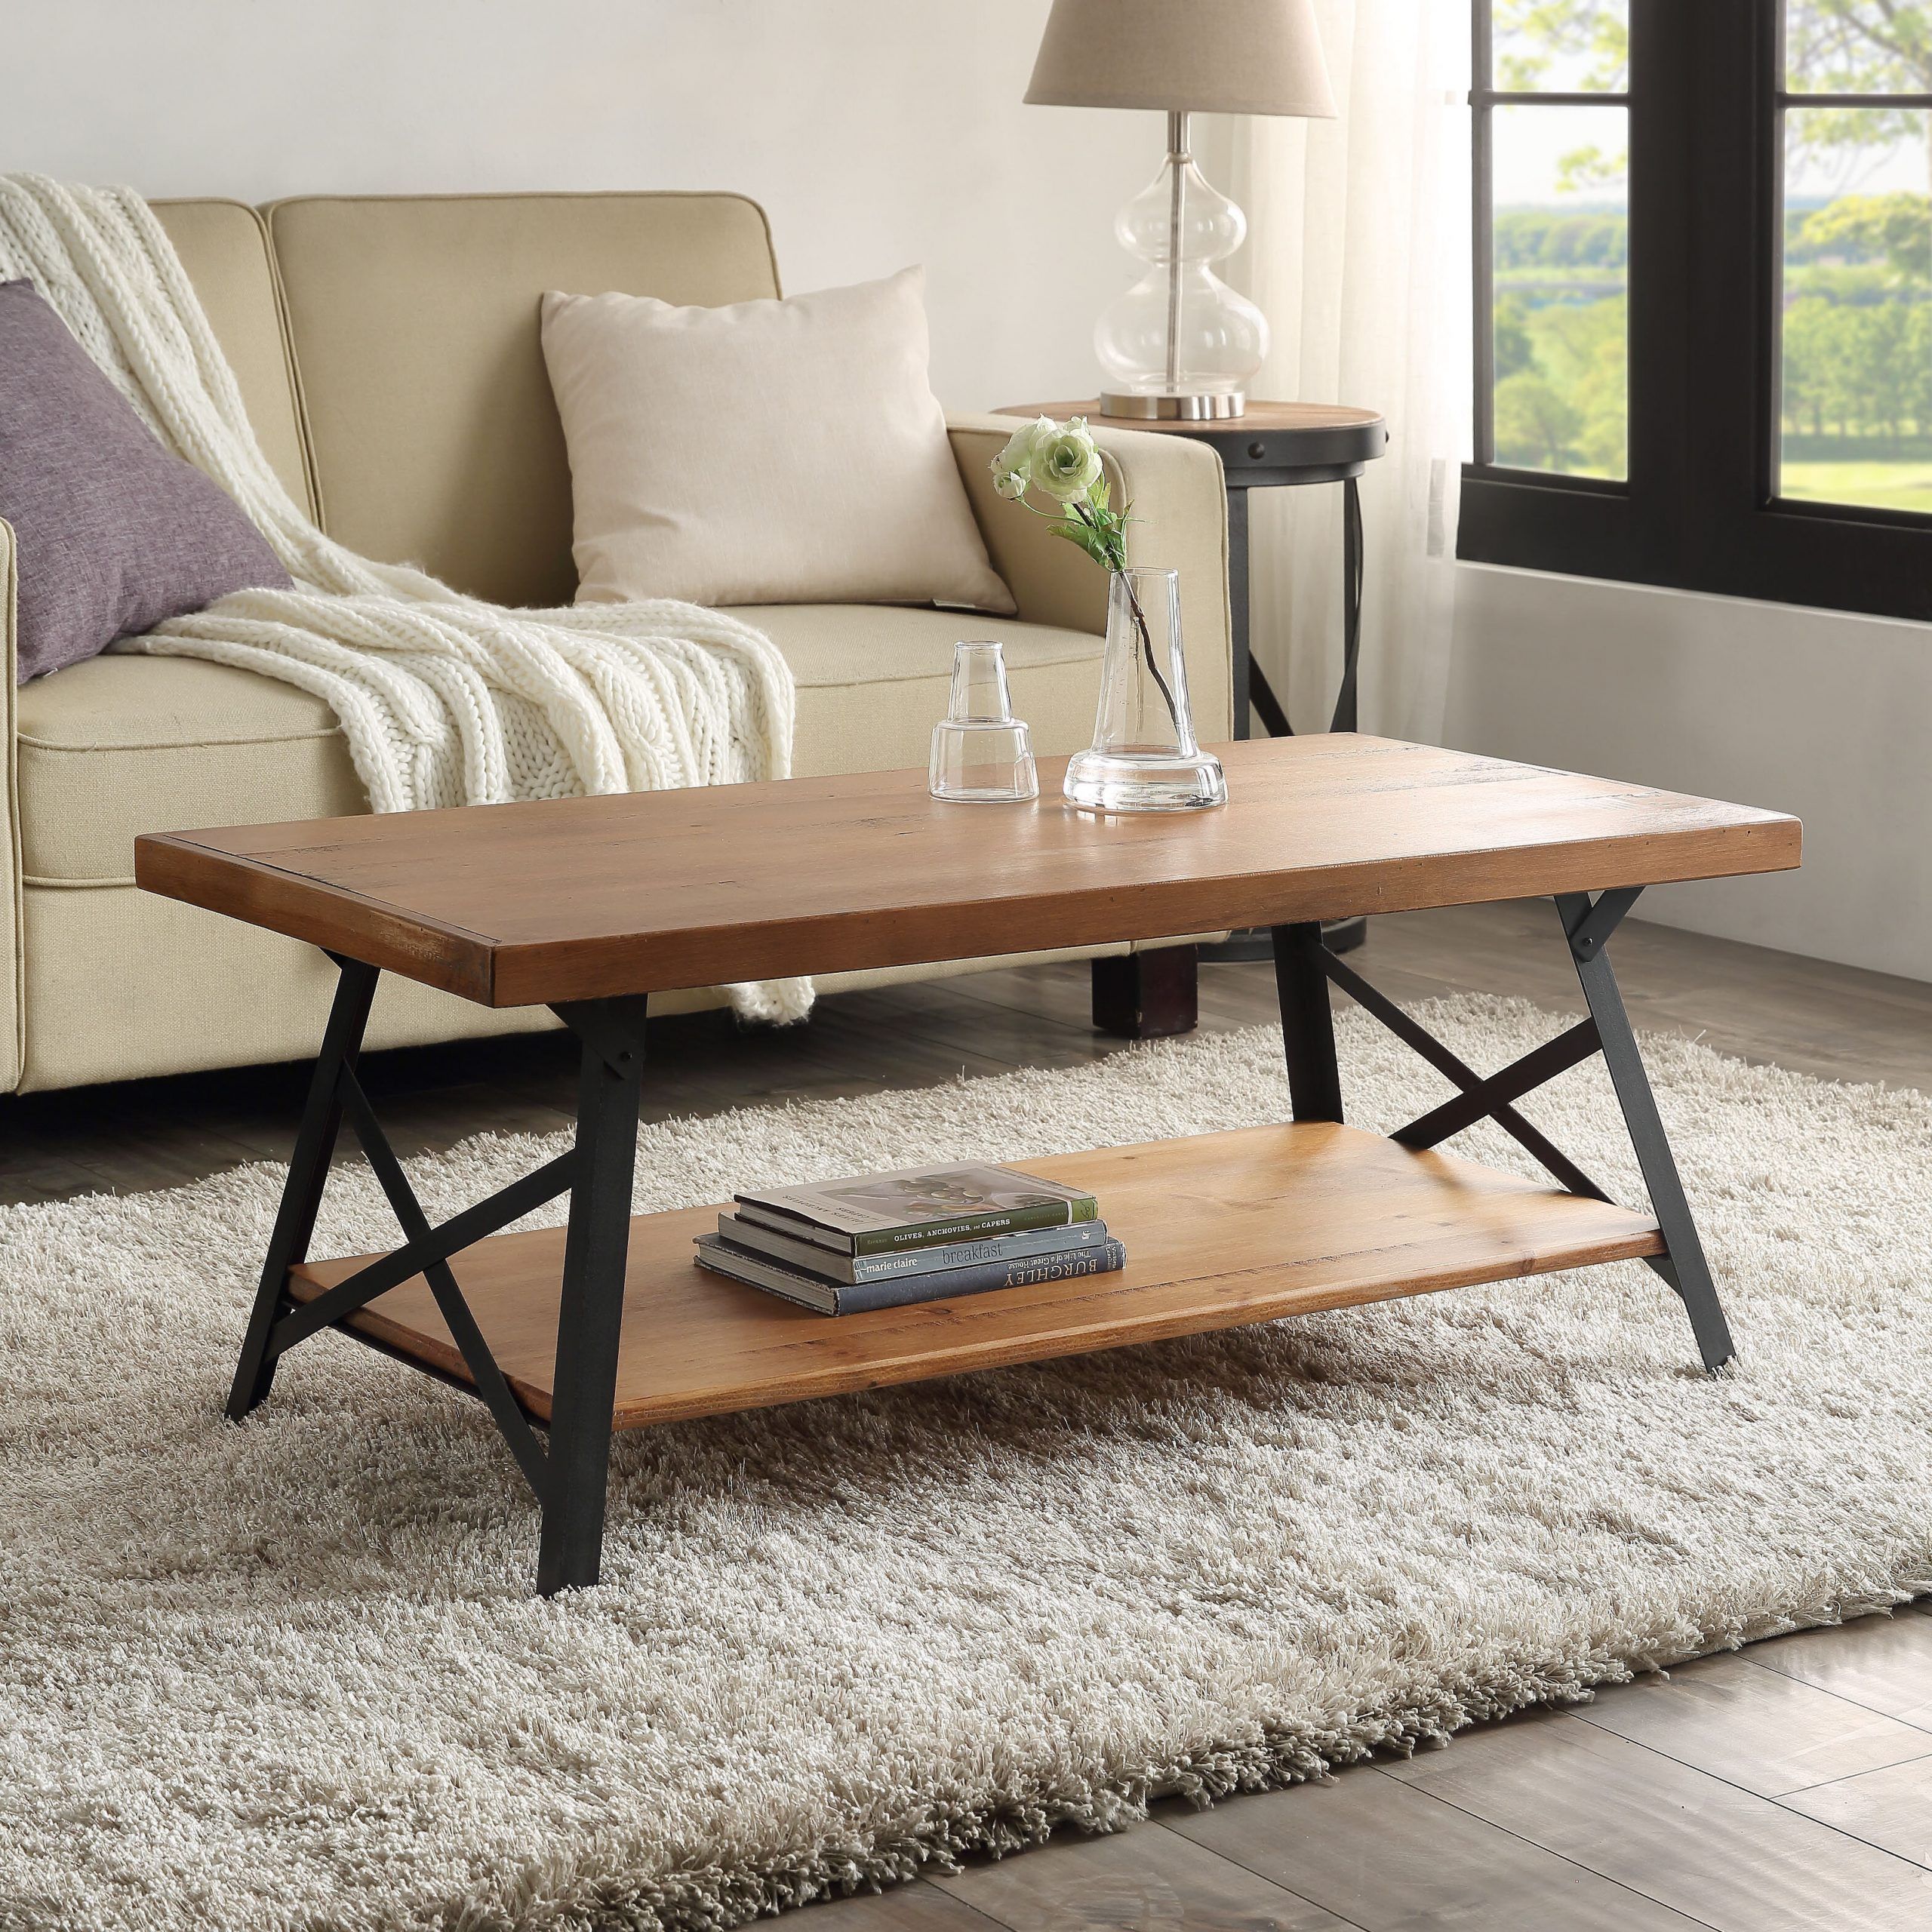 Gracie Oaks 43'' Metal Legs Rustic Coffee Table, Solid Wood Tabletop |  Wayfair Inside Iron Legs Coffee Tables (View 5 of 20)